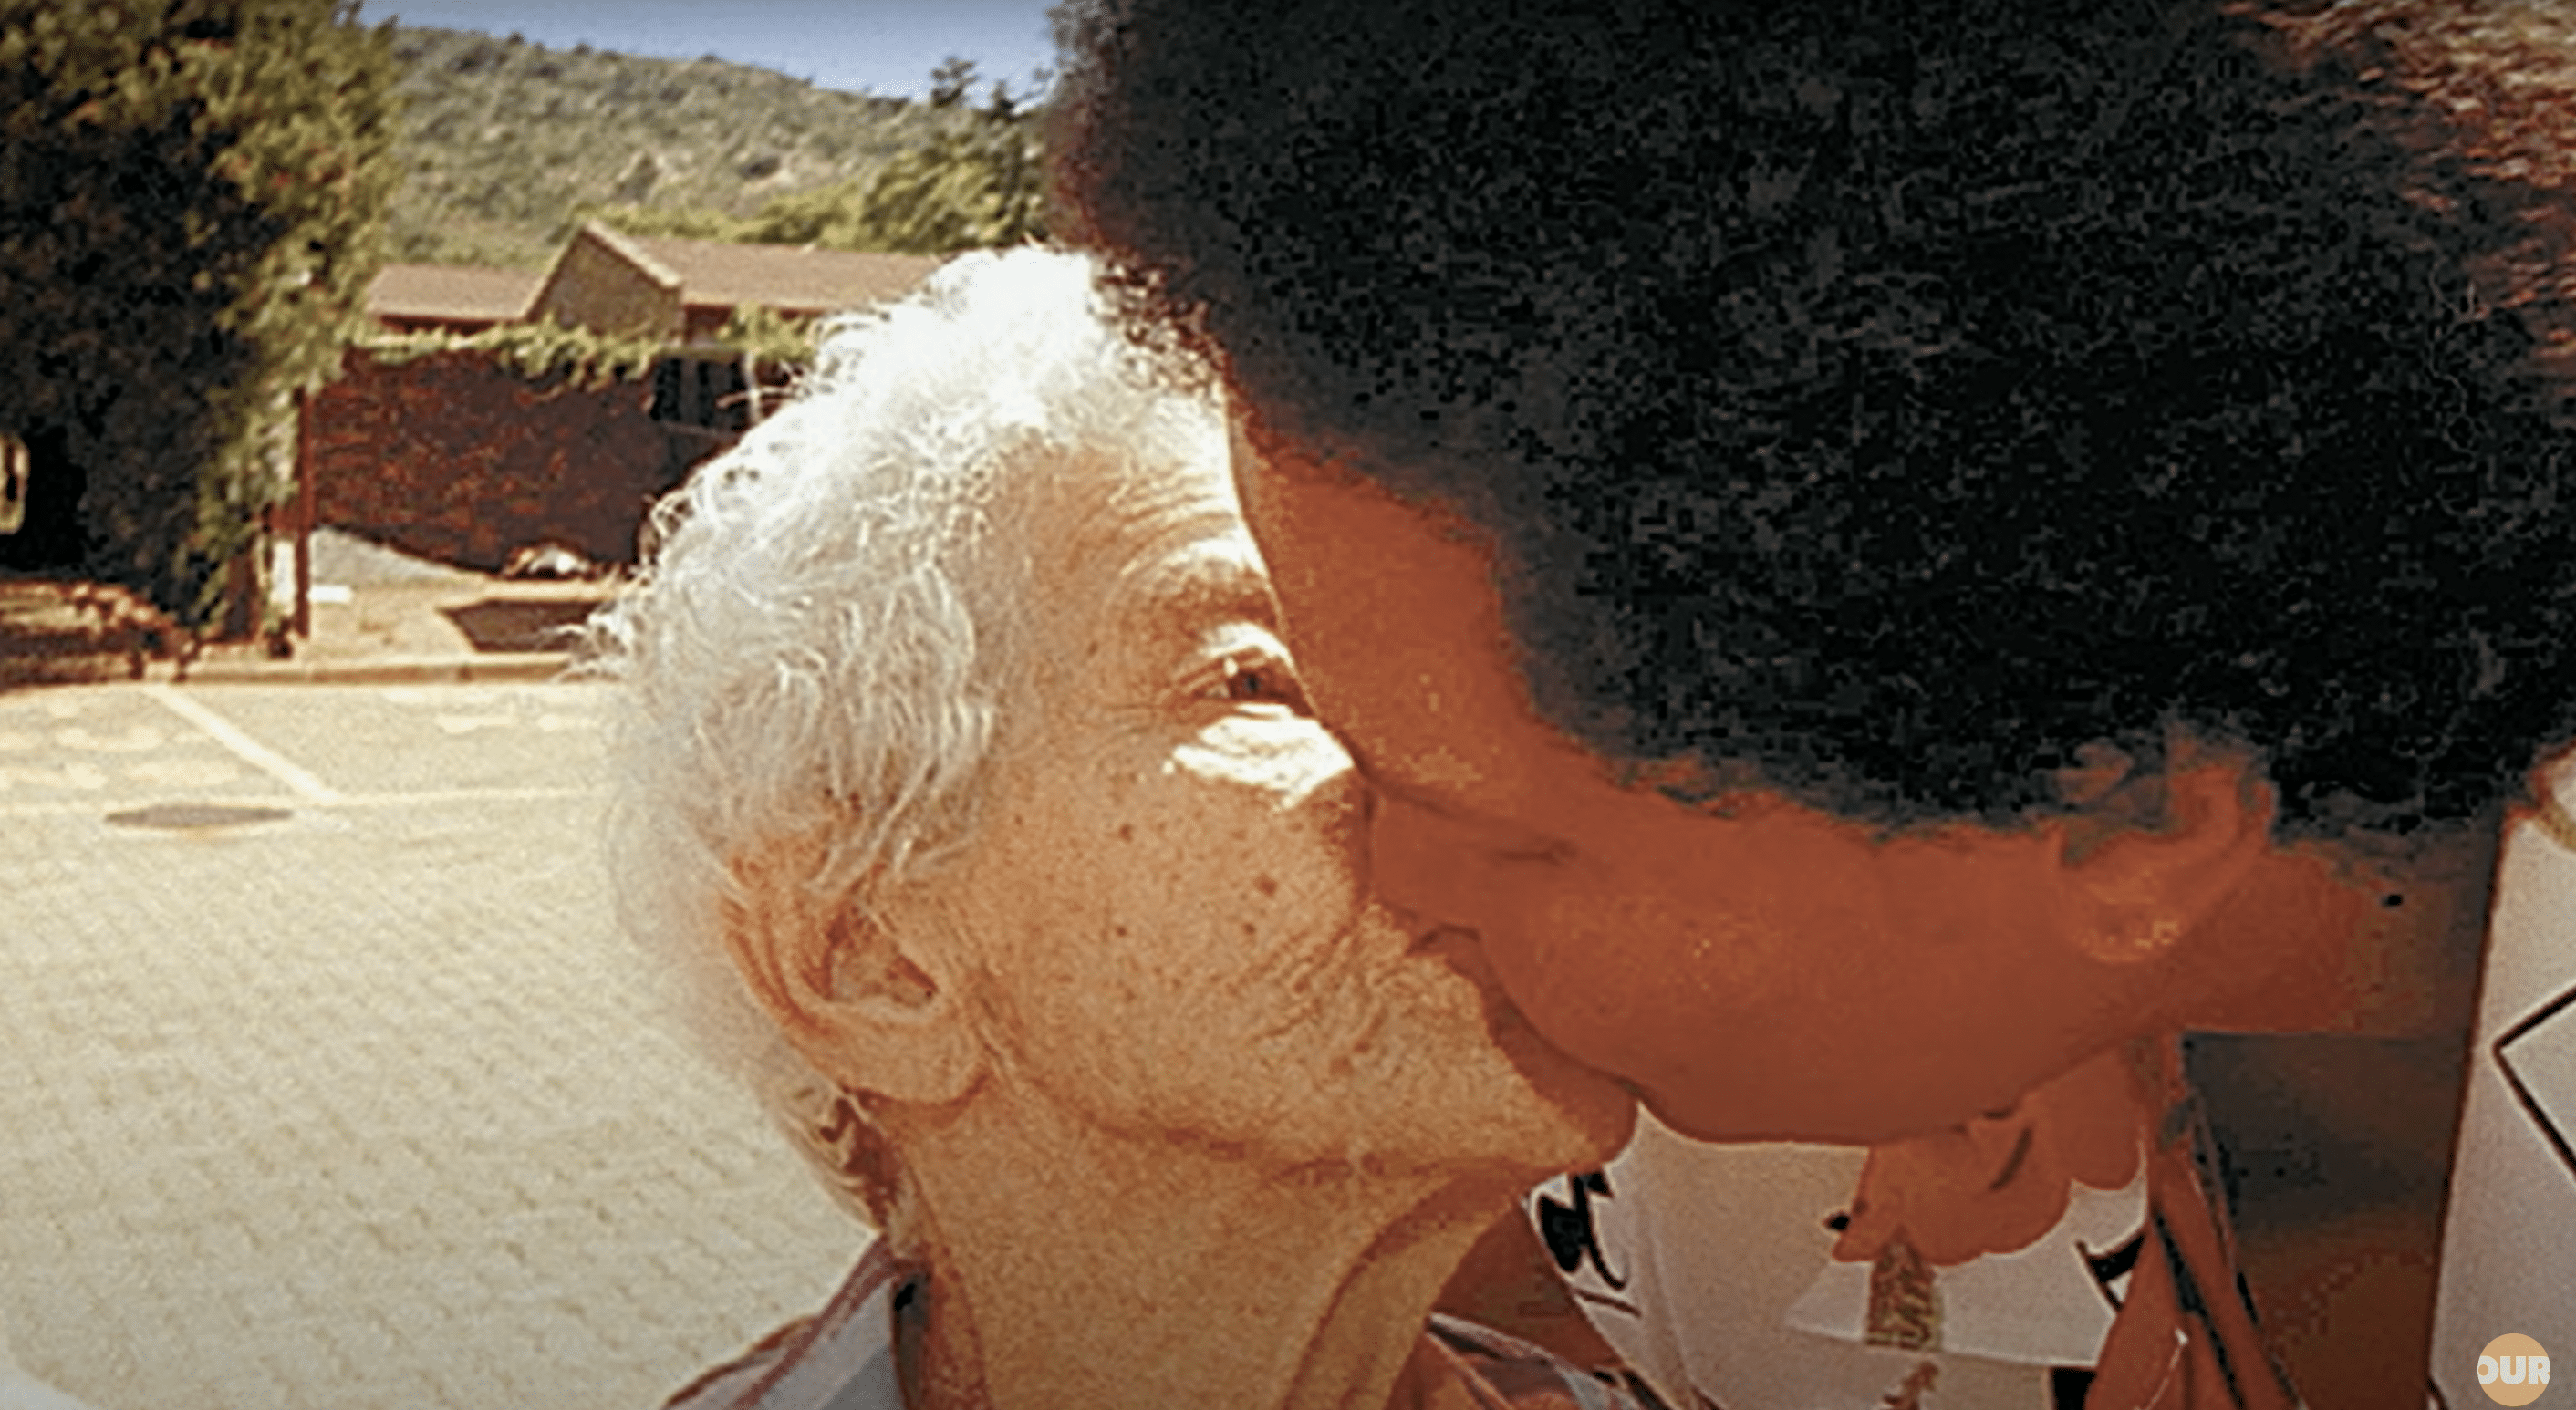 Sandra küsst ihre Mutter zärtlich bei ihrem Wiedersehen. | Quelle: YouTube.com/Our Life